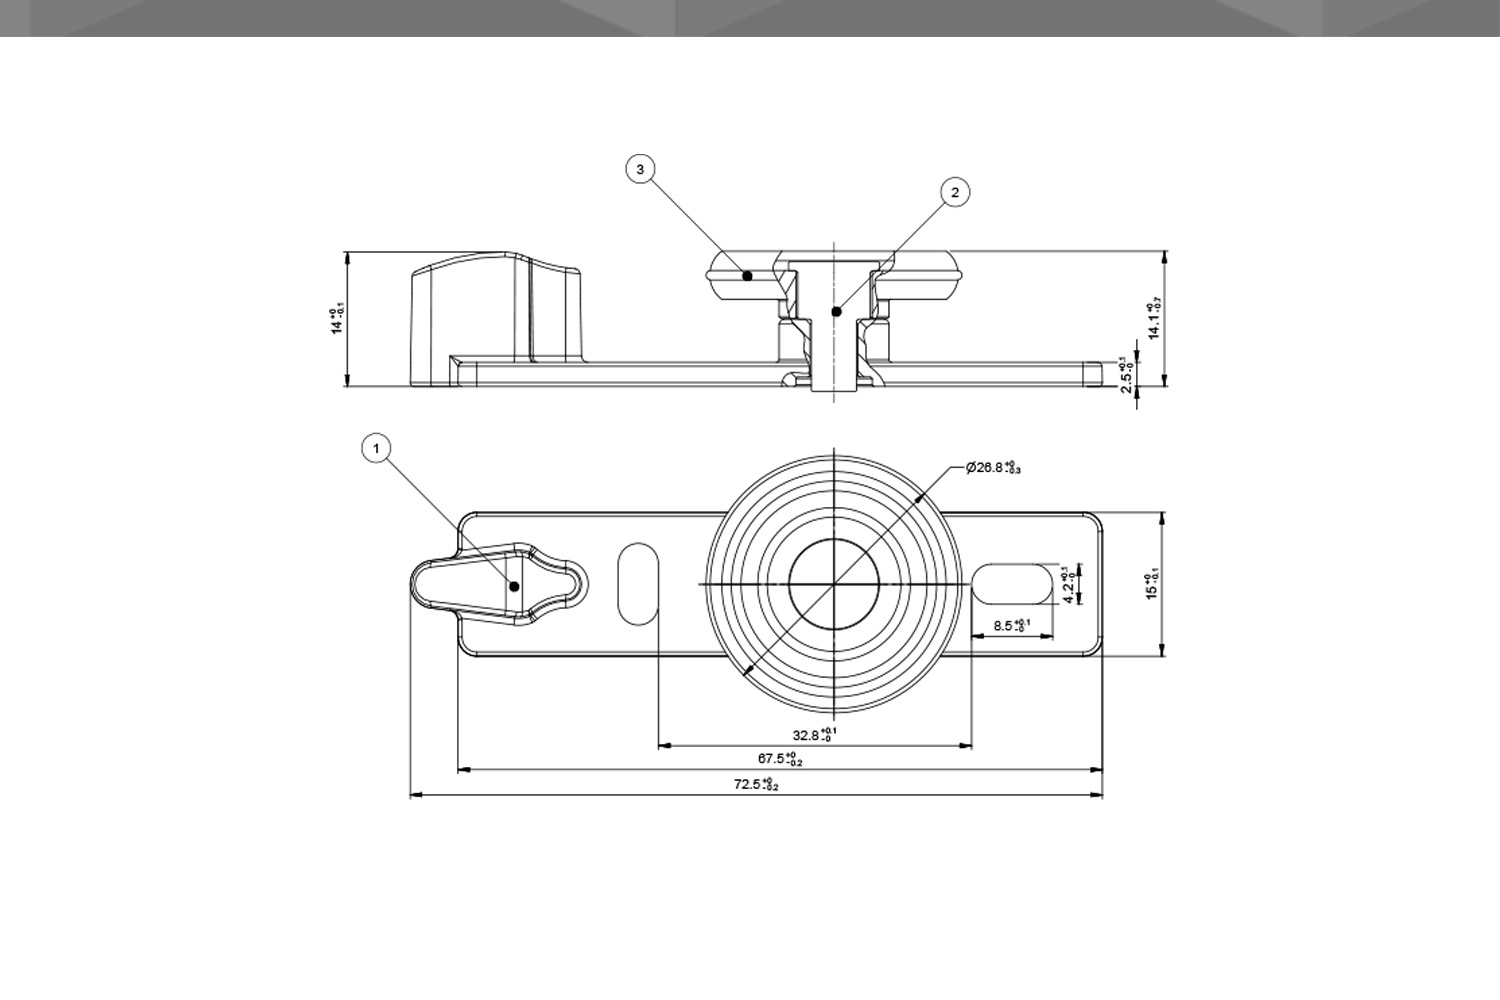 Desenho Técnico Guia RM Reta Corpo POM 1 Rodízio Ø26,8 mm TPE Encaixe Reforçado